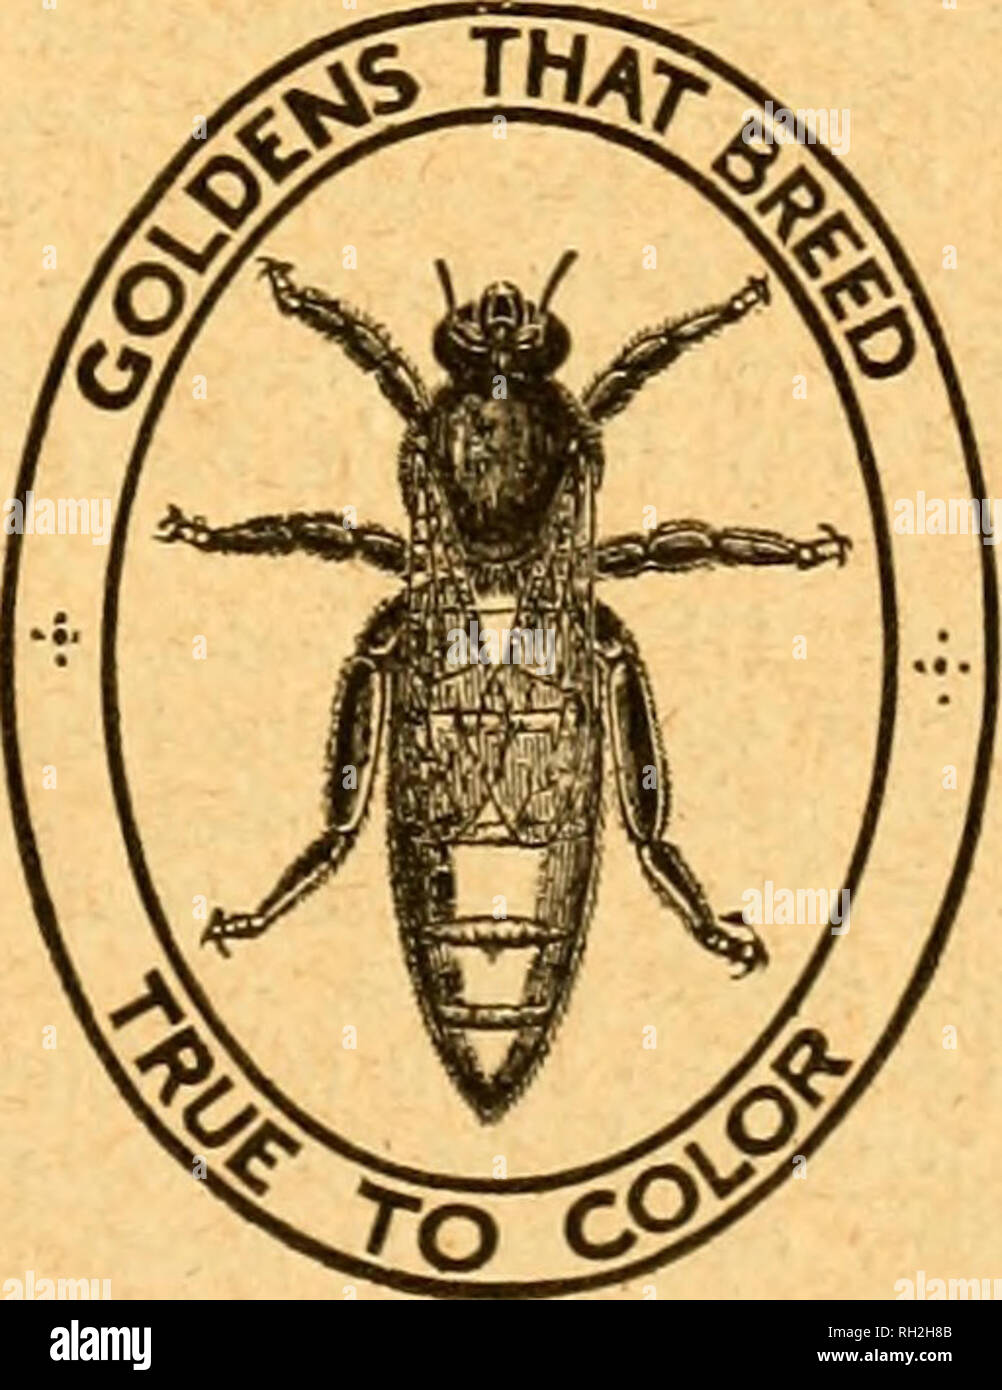 . British bee journal &AMP ; conseiller les apiculteurs. Les abeilles. 21 juillet, 1921. Le BBITISH BEE JOURNAL. 339-NATURELLES SOULEVÉES 1921 noirs fertiles, Ss. chaque. -WOOLDRIDGB, Woodleys, Winchcombe, Glos. r.40 italien pur FAKENHAM Queens sont tous sélectionnez Queens ; livraison rapide, juillet-août, 8s. 6d. chaque-ATKINSON, fakenham. r.q.159 À VENDRE, plusieurs noyaux sur châssis 3-commer- cial (16 in. x 10 in.) les cadres, avec l'italien 1921 Queens, £3, chaque port payé ; garantie de satisfaction-PEARSON &AMP ; GALE, MarlDQrpugb. q.156 LIVRAISON IMMÉDIATE.-4-frame, noyaux 50s.. 6-frame Stocks, 70. ; case 10 s., consignés - LEE, l'être Banque D'Images